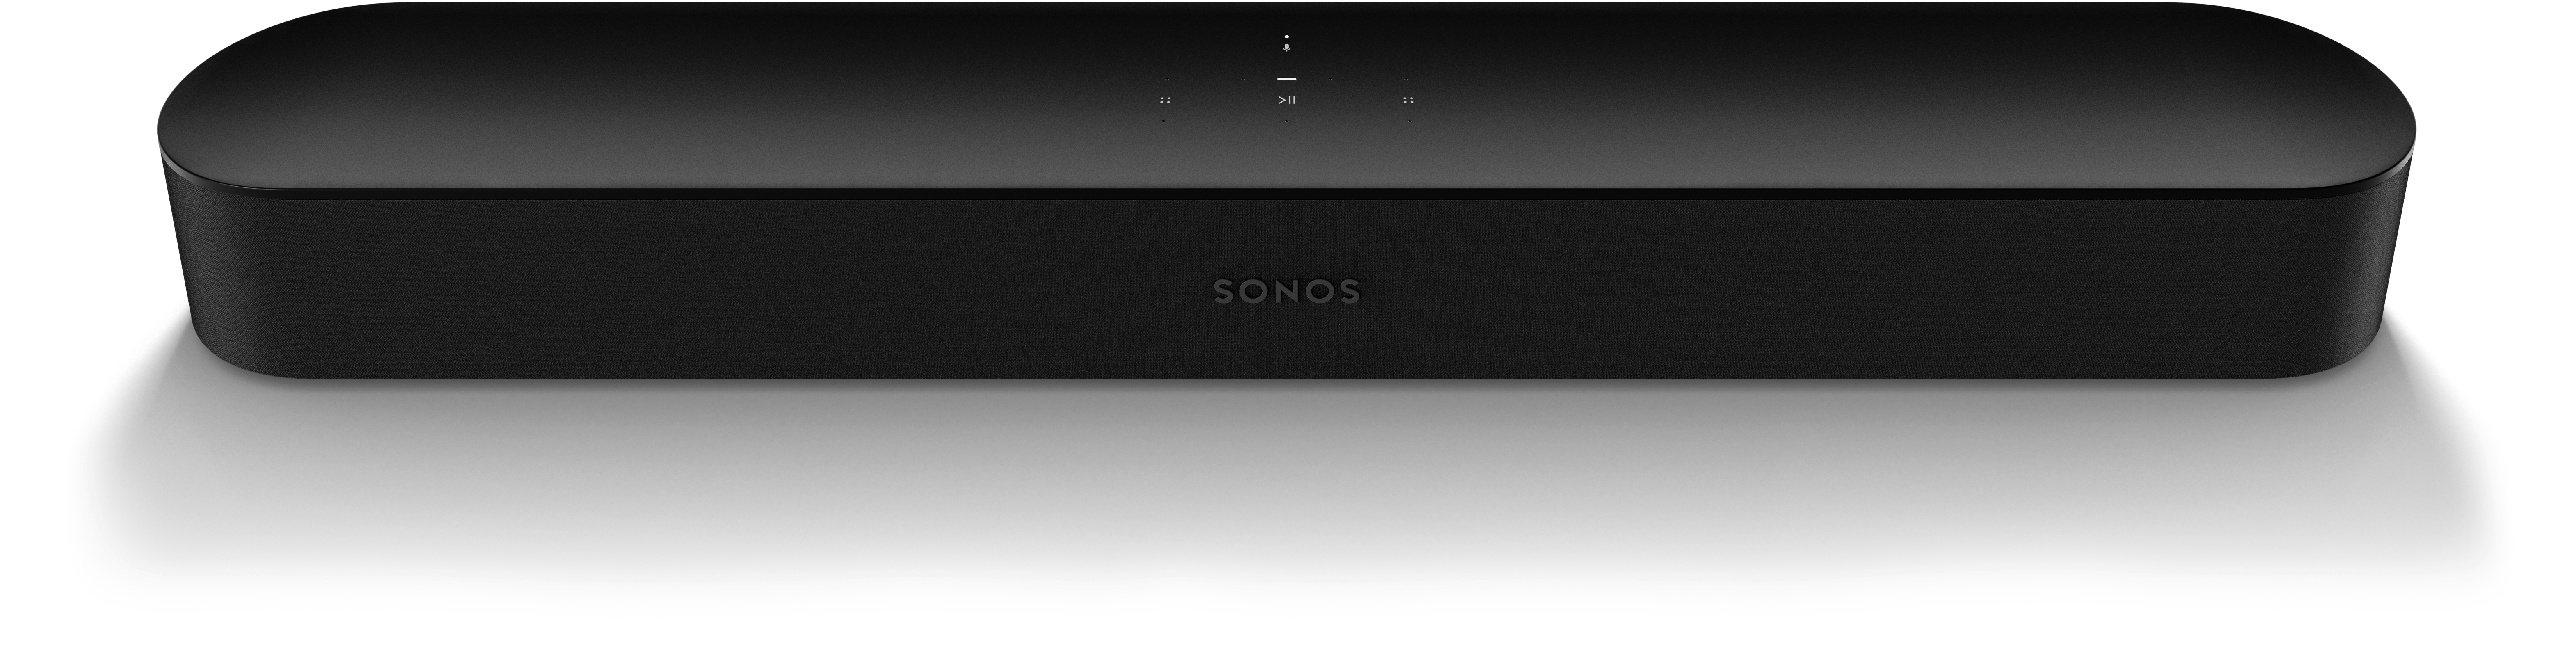 Image result for Sonos Beam soundbar